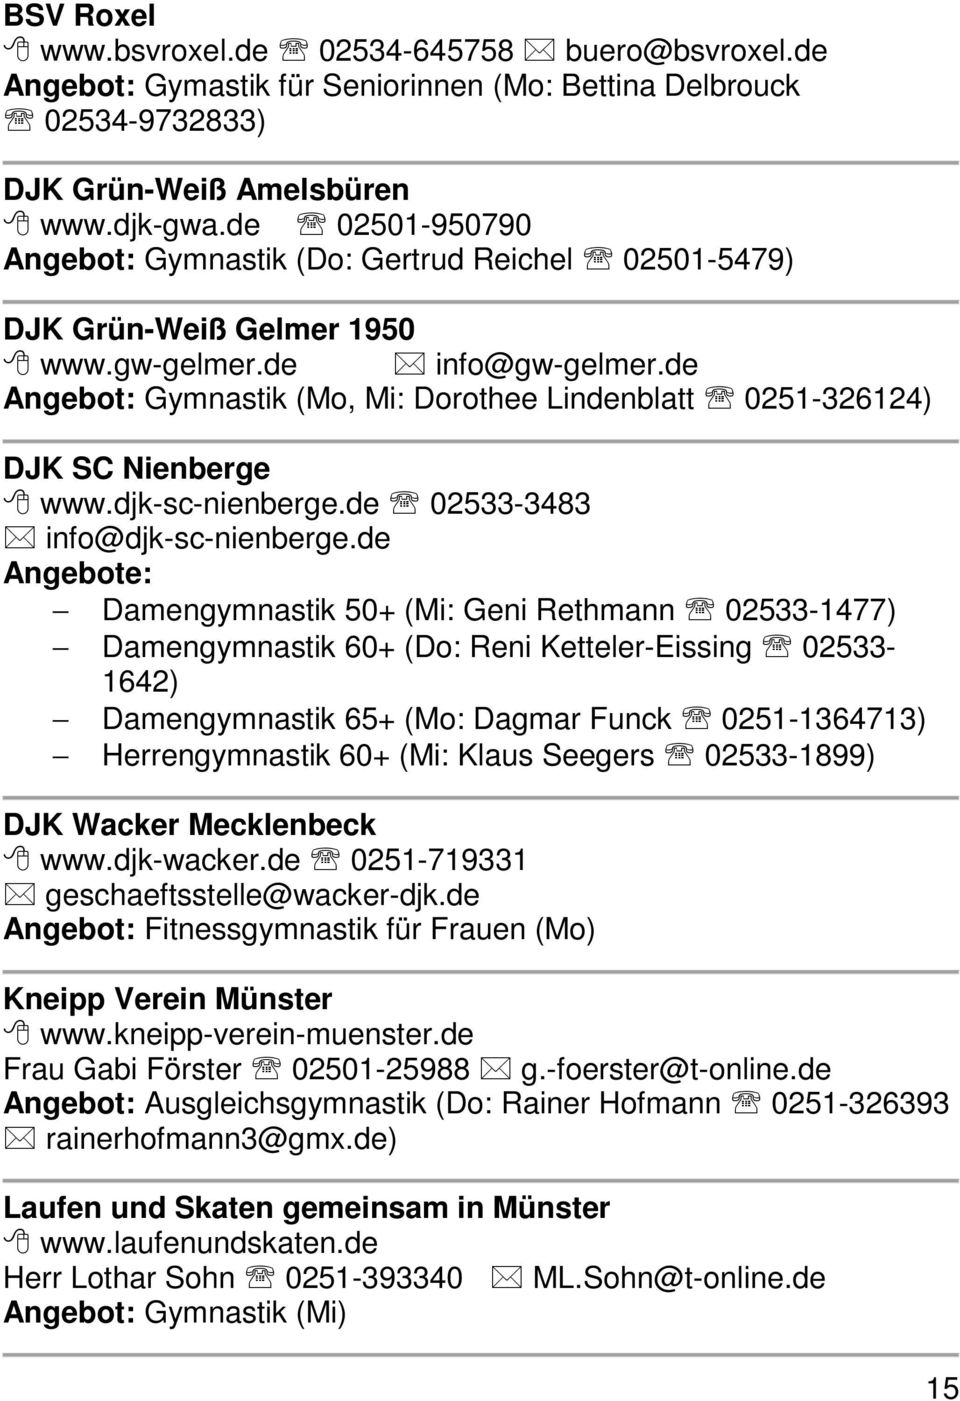 de Angebot: Gymnastik (Mo, Mi: Dorothee Lindenblatt 0251-326124) DJK SC Nienberge www.djk-sc-nienberge.de 02533-3483 info@djk-sc-nienberge.